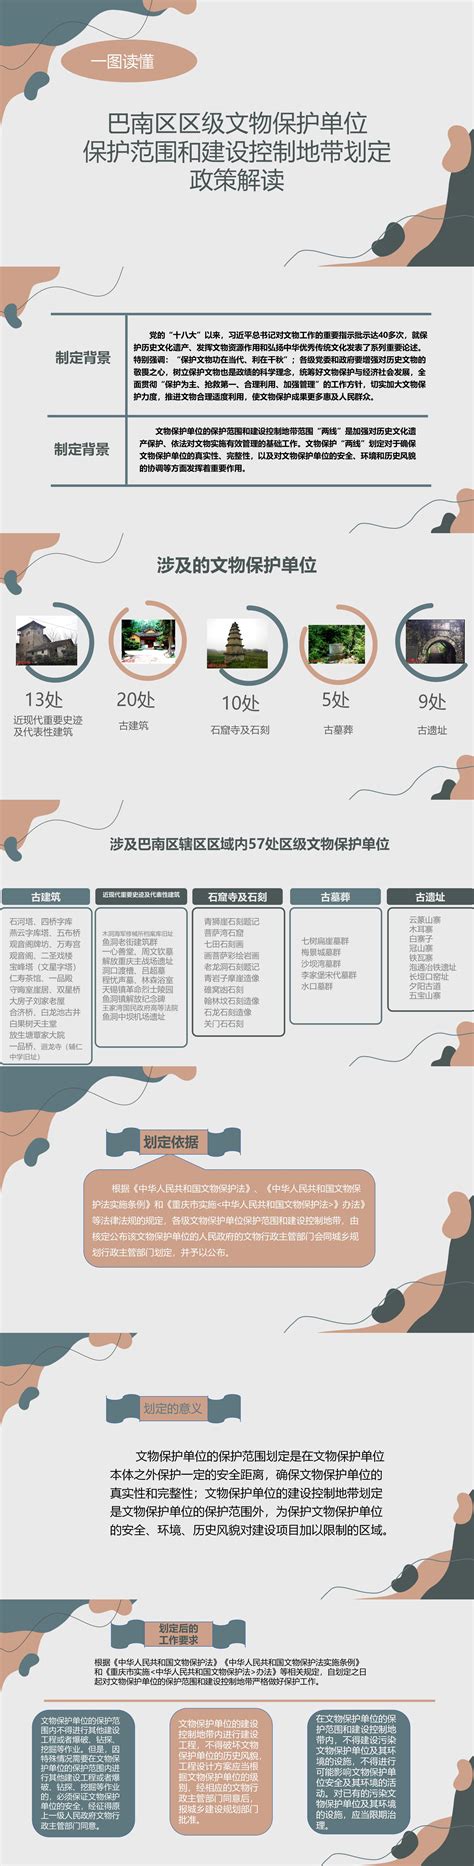 巴南晒出第三季度招商引资攻坚成果 32个项目集中签约 总投资178亿元_重庆市人民政府网